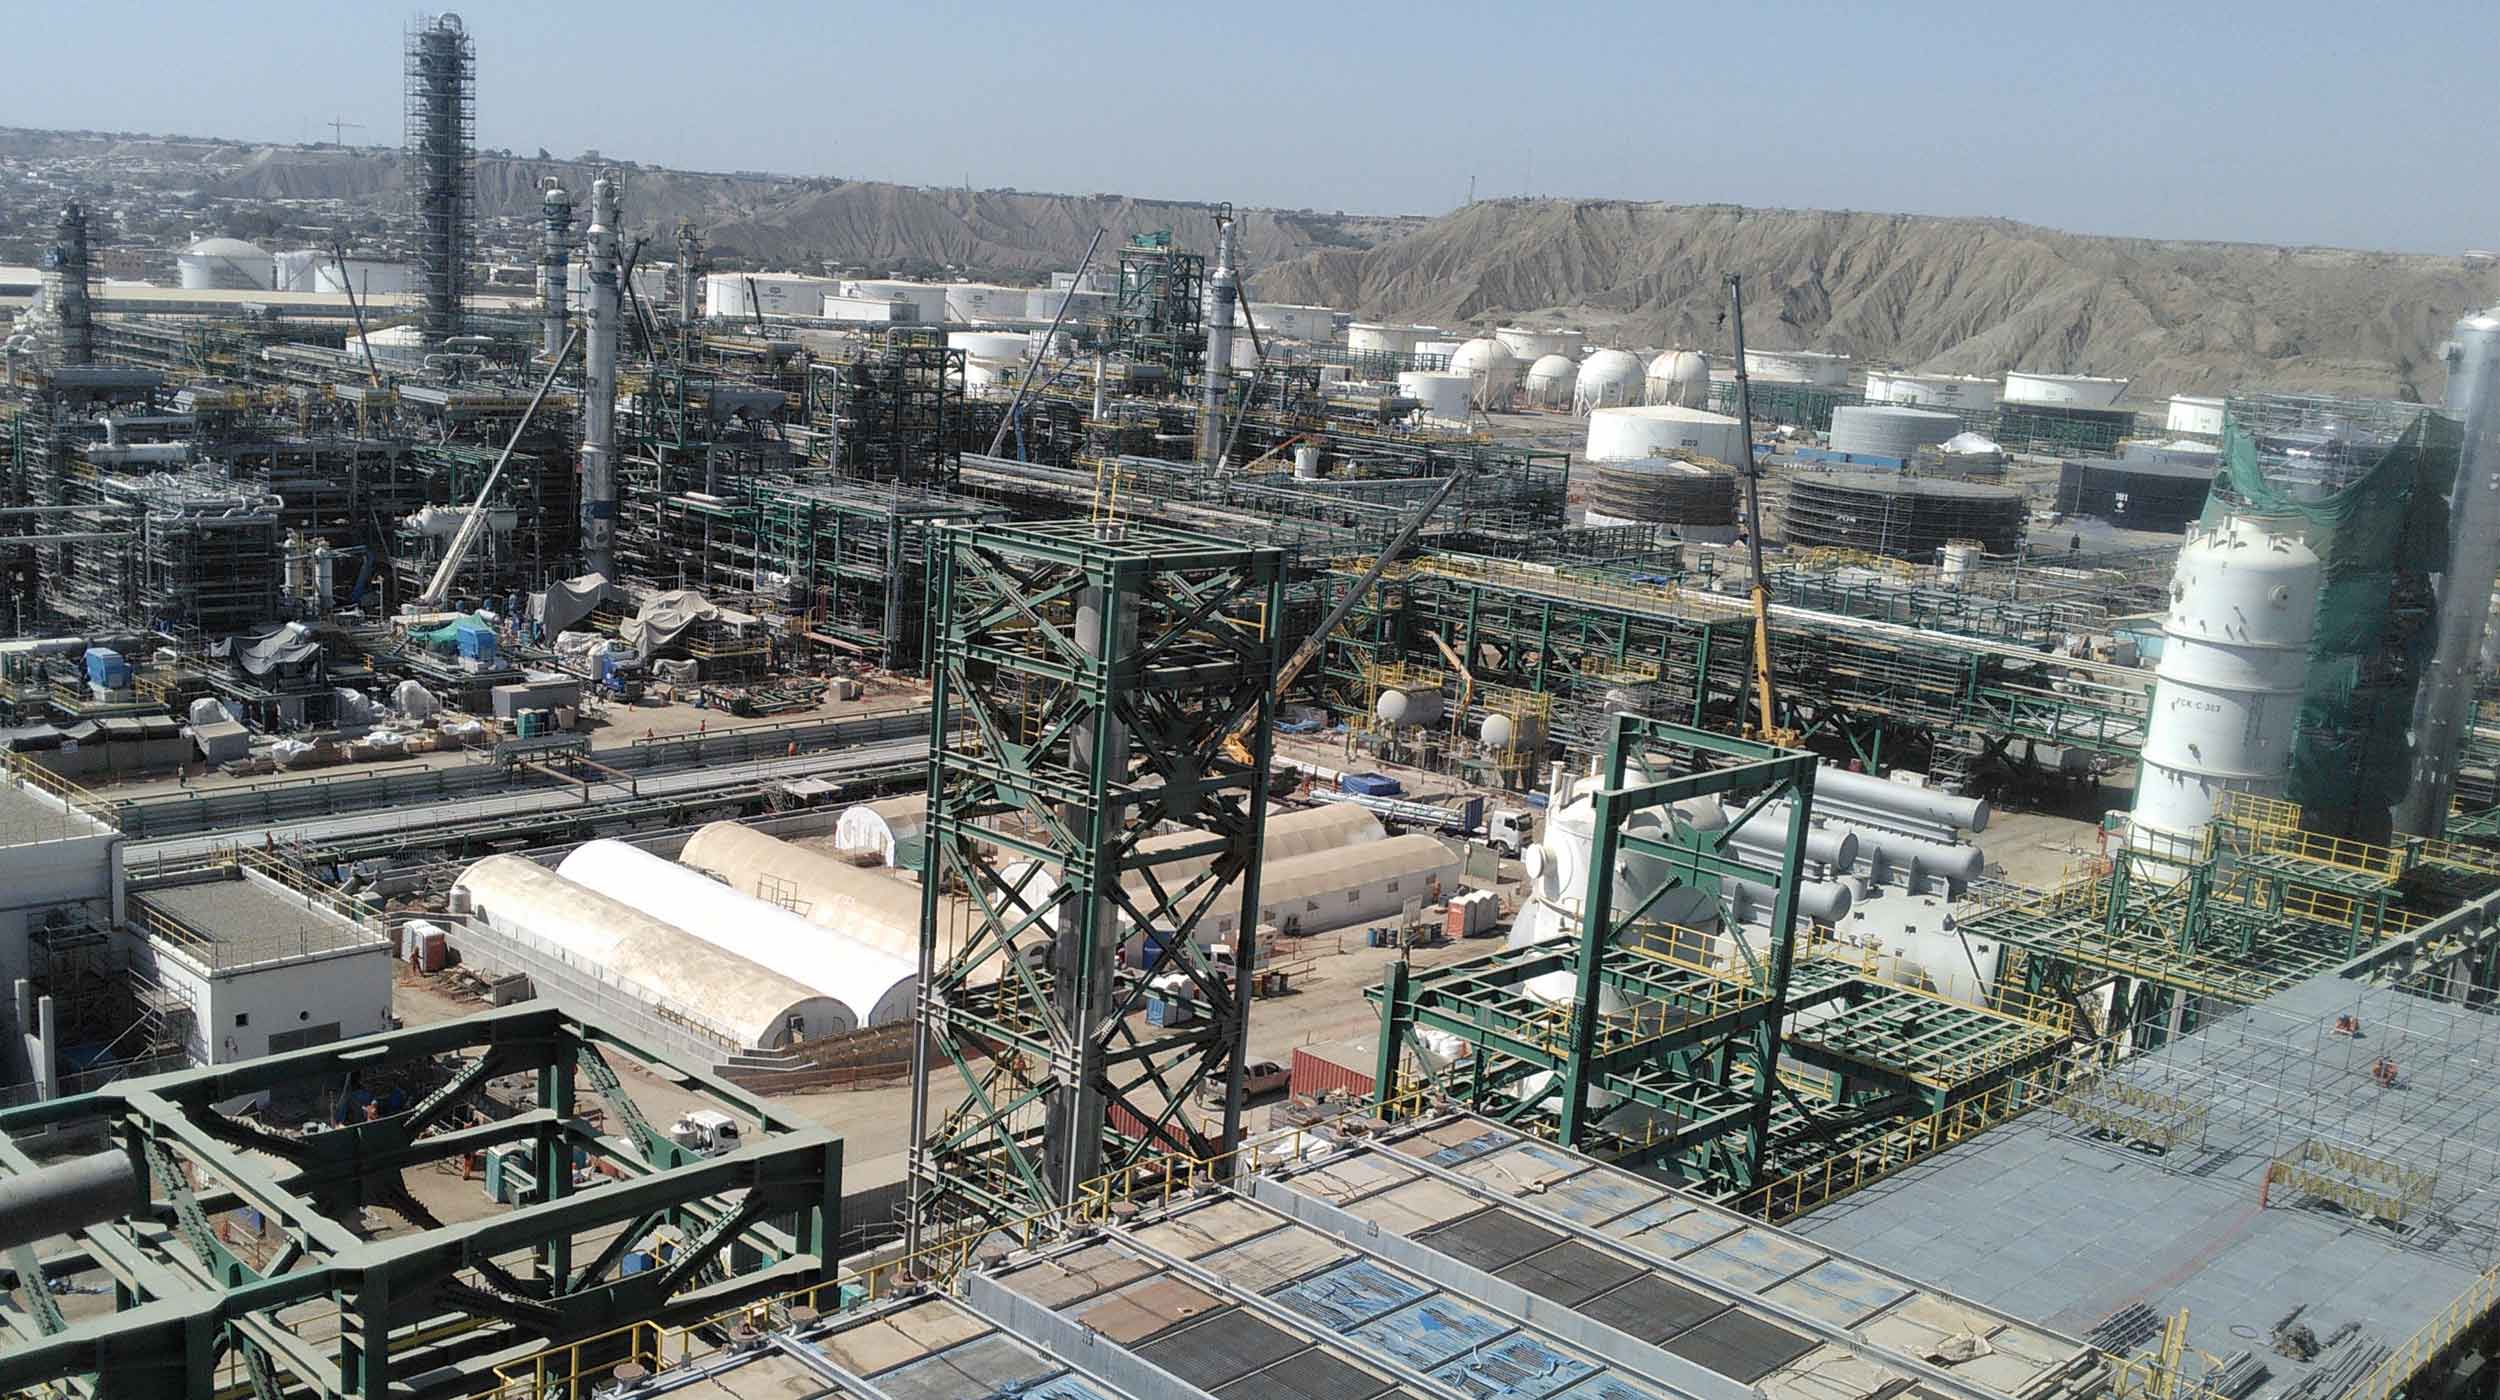 Das Talara-Projekt fördert die Energieentwicklung Perus durch die Installation neuer Produktionseinheiten und neuer Systeme in der Raffinerie.